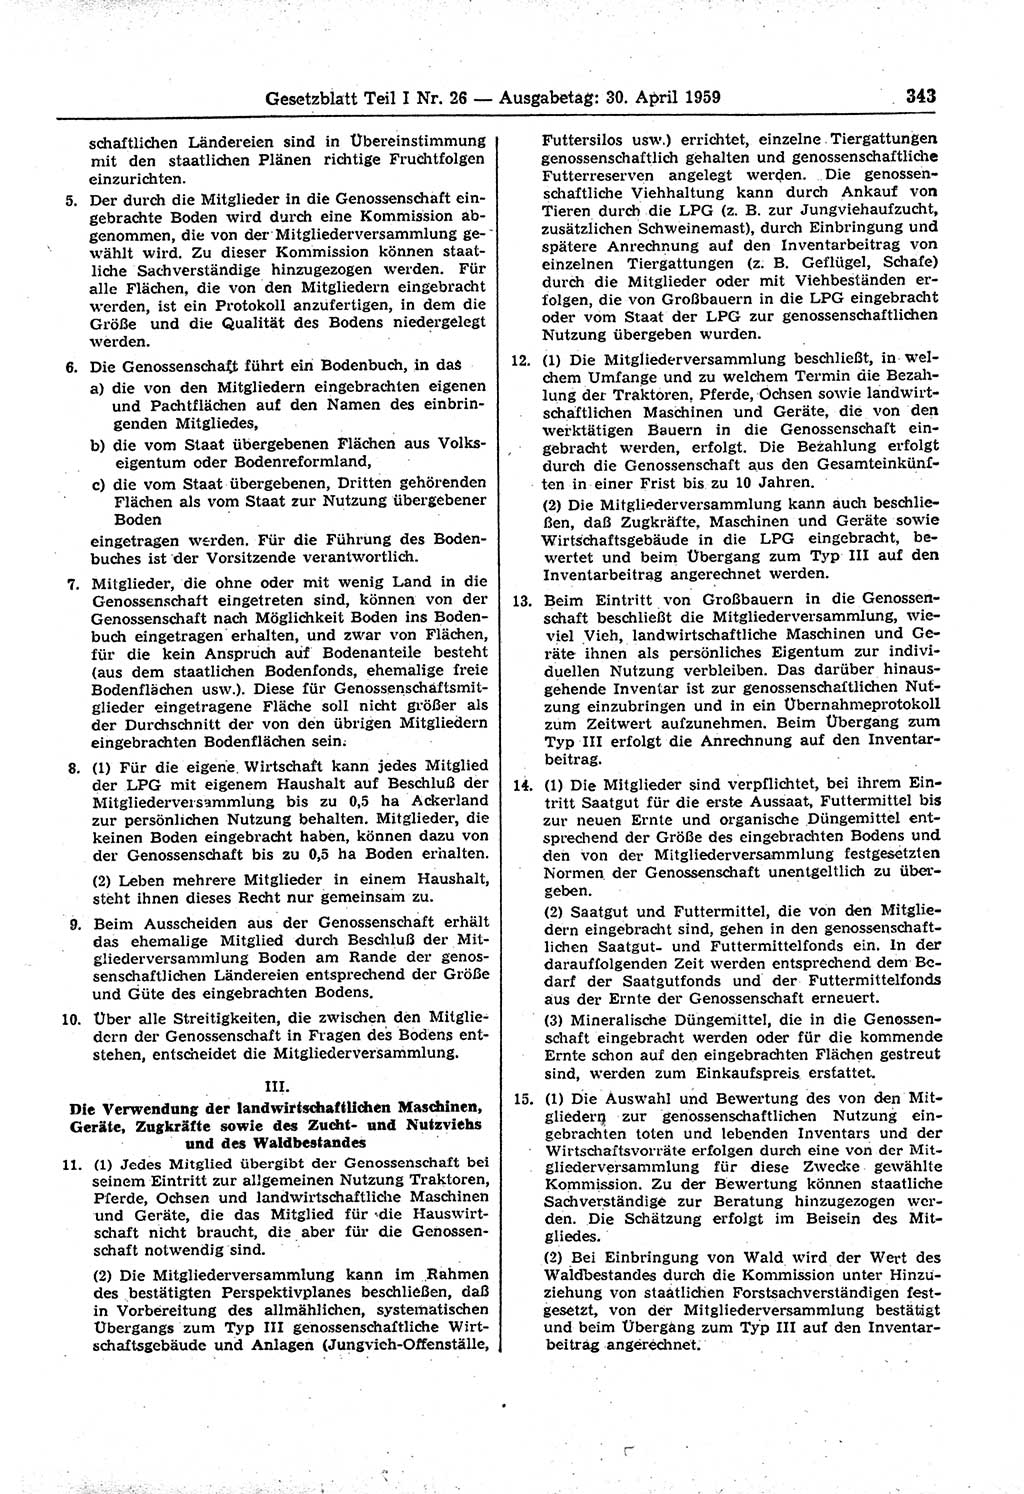 Gesetzblatt (GBl.) der Deutschen Demokratischen Republik (DDR) Teil Ⅰ 1959, Seite 343 (GBl. DDR Ⅰ 1959, S. 343)